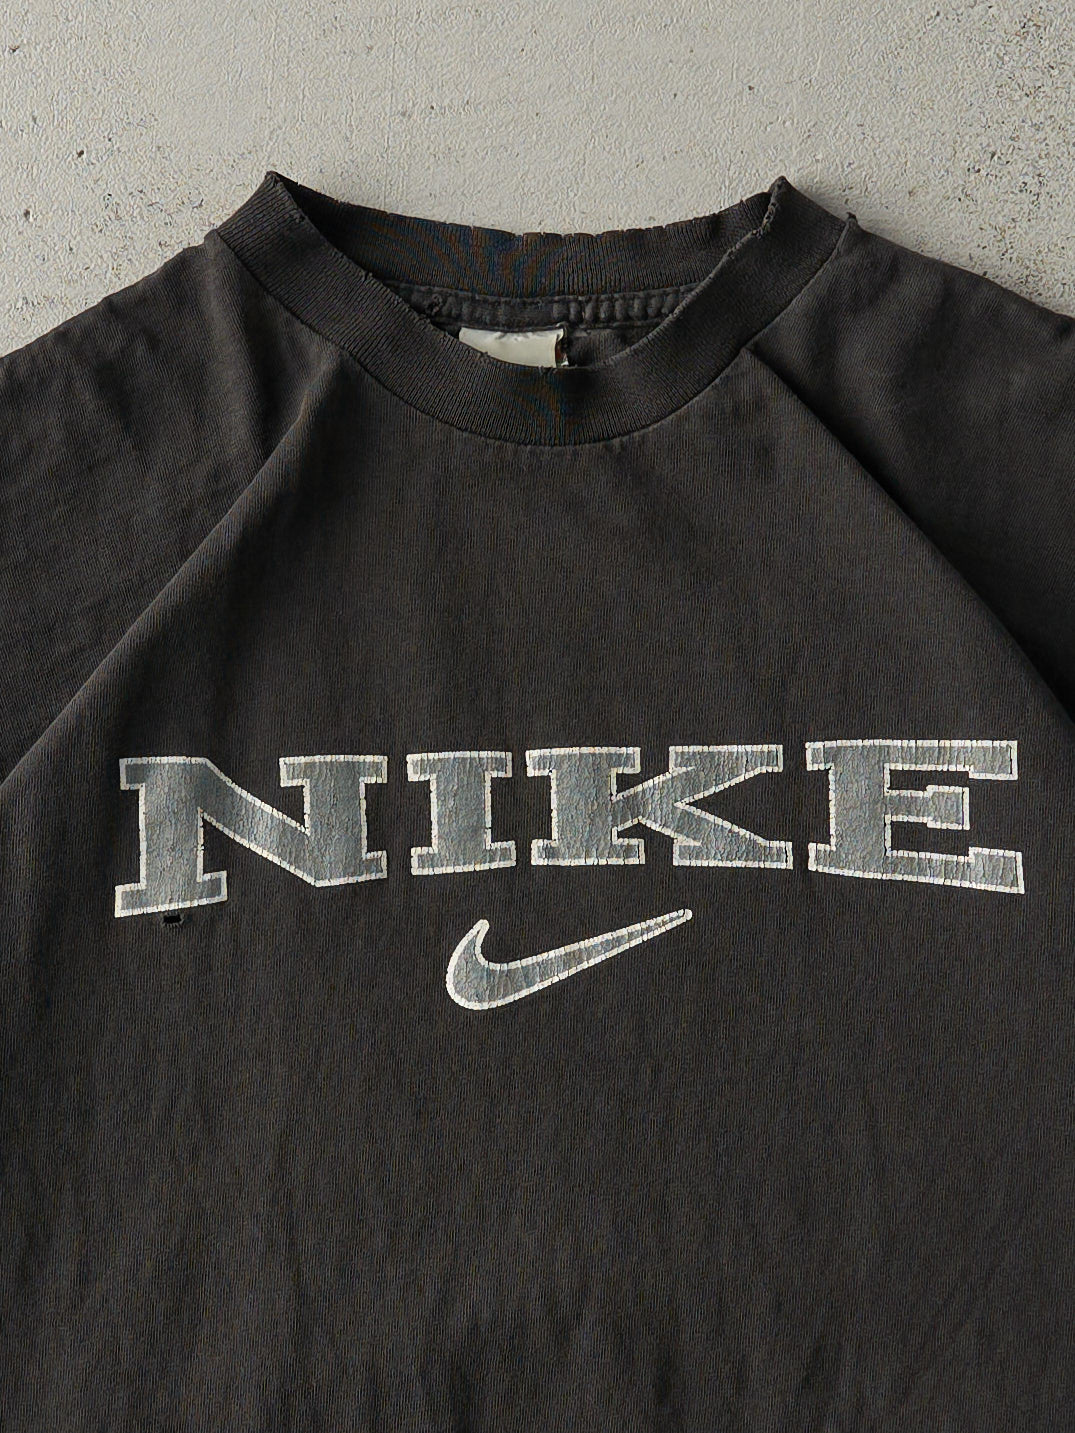 Vintage 90s Faded Black Nike Tee (S/M)